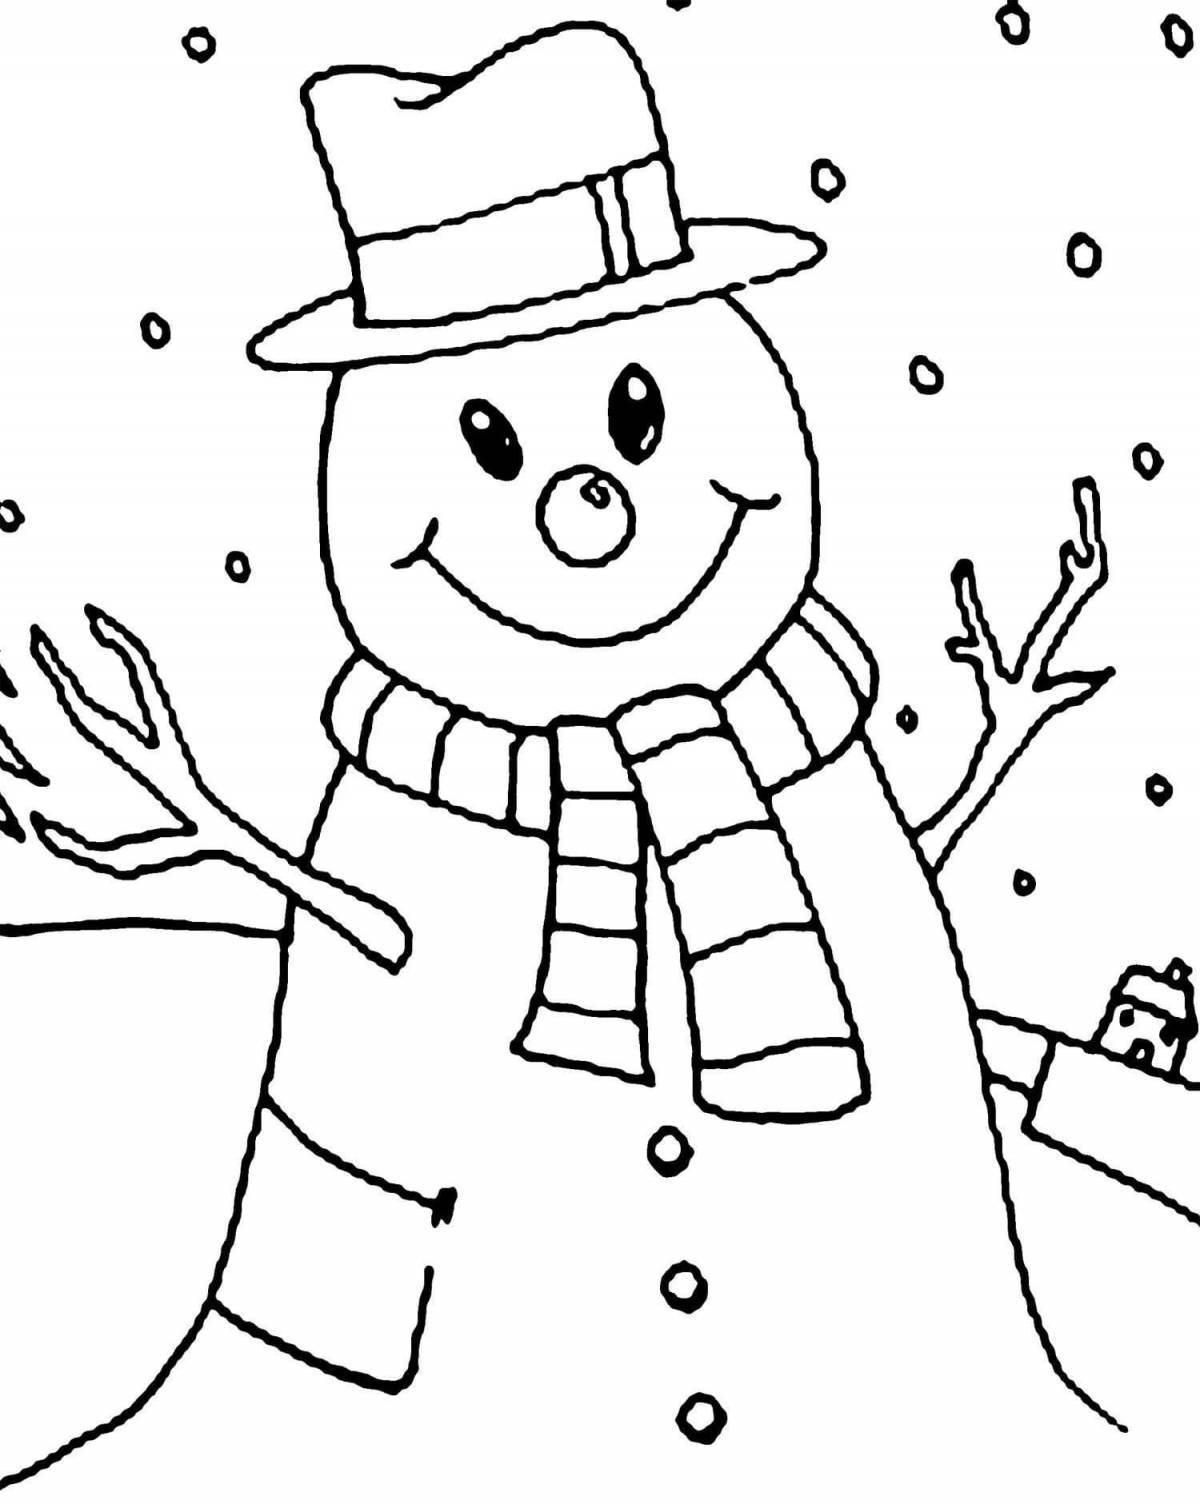 Забавная раскраска снеговик для детей